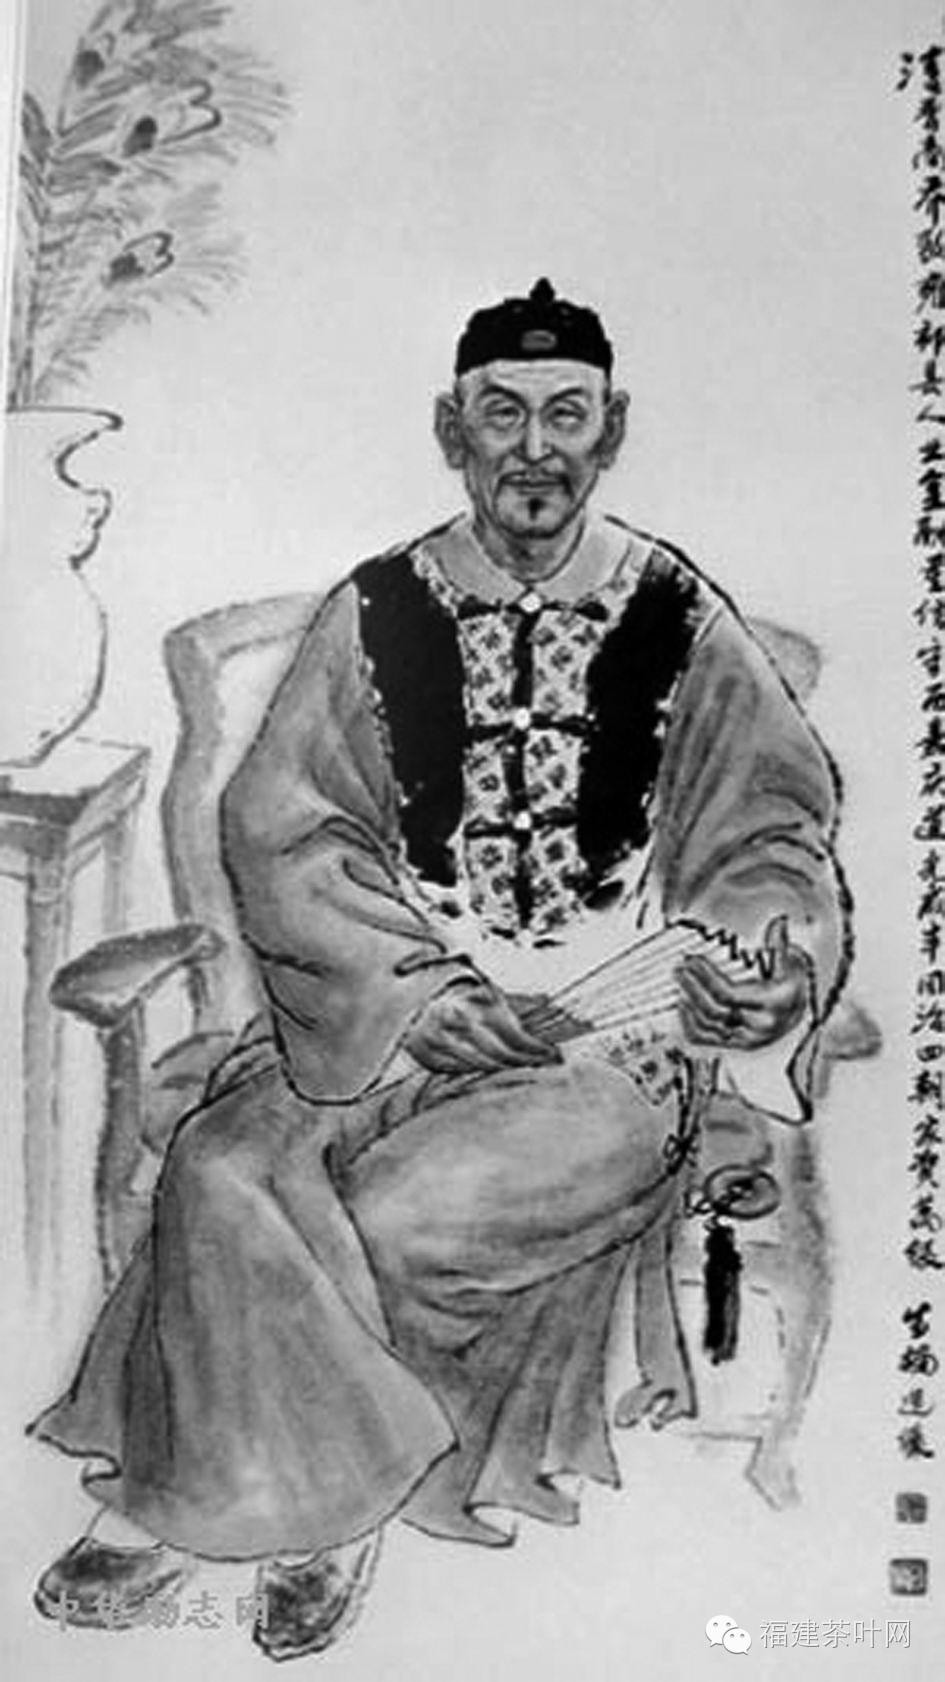 乔致庸徐润(1838—1911),又名以璋,字润立,号雨之,别号愚斋,香山县